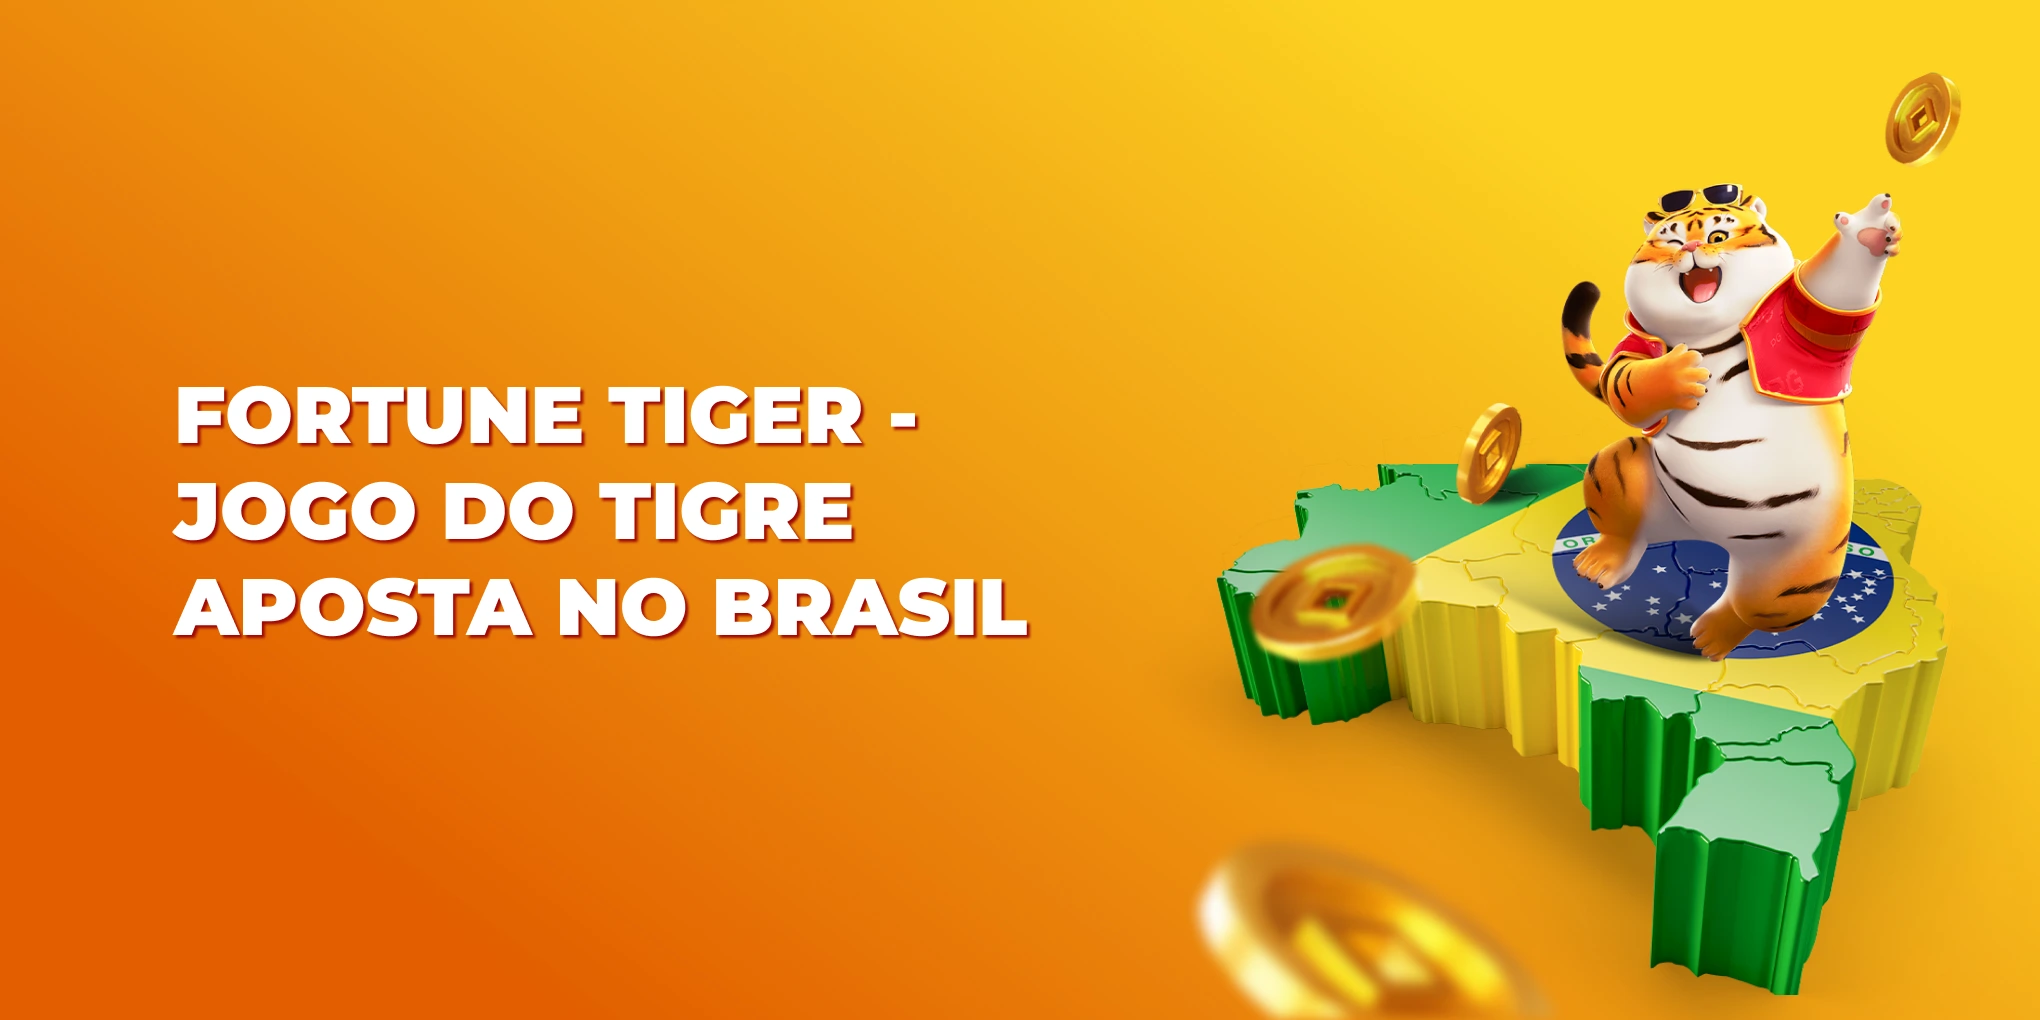 fortune tiger jogo do tigre aposta no brasil